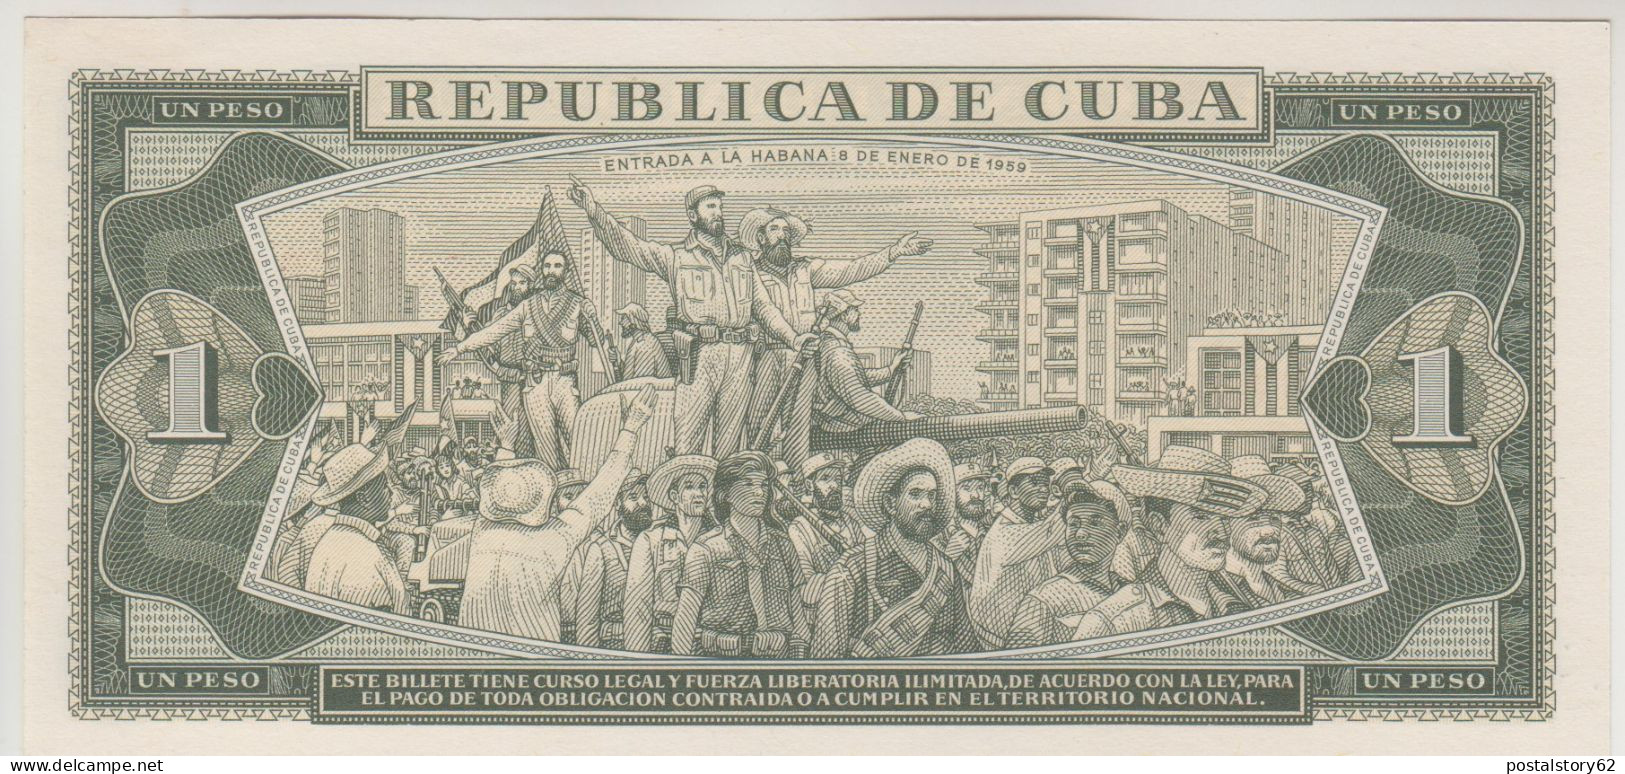 Banco Nacional De Cuba, Un Peso 1981  Pick# 102 B  FDS - Cuba